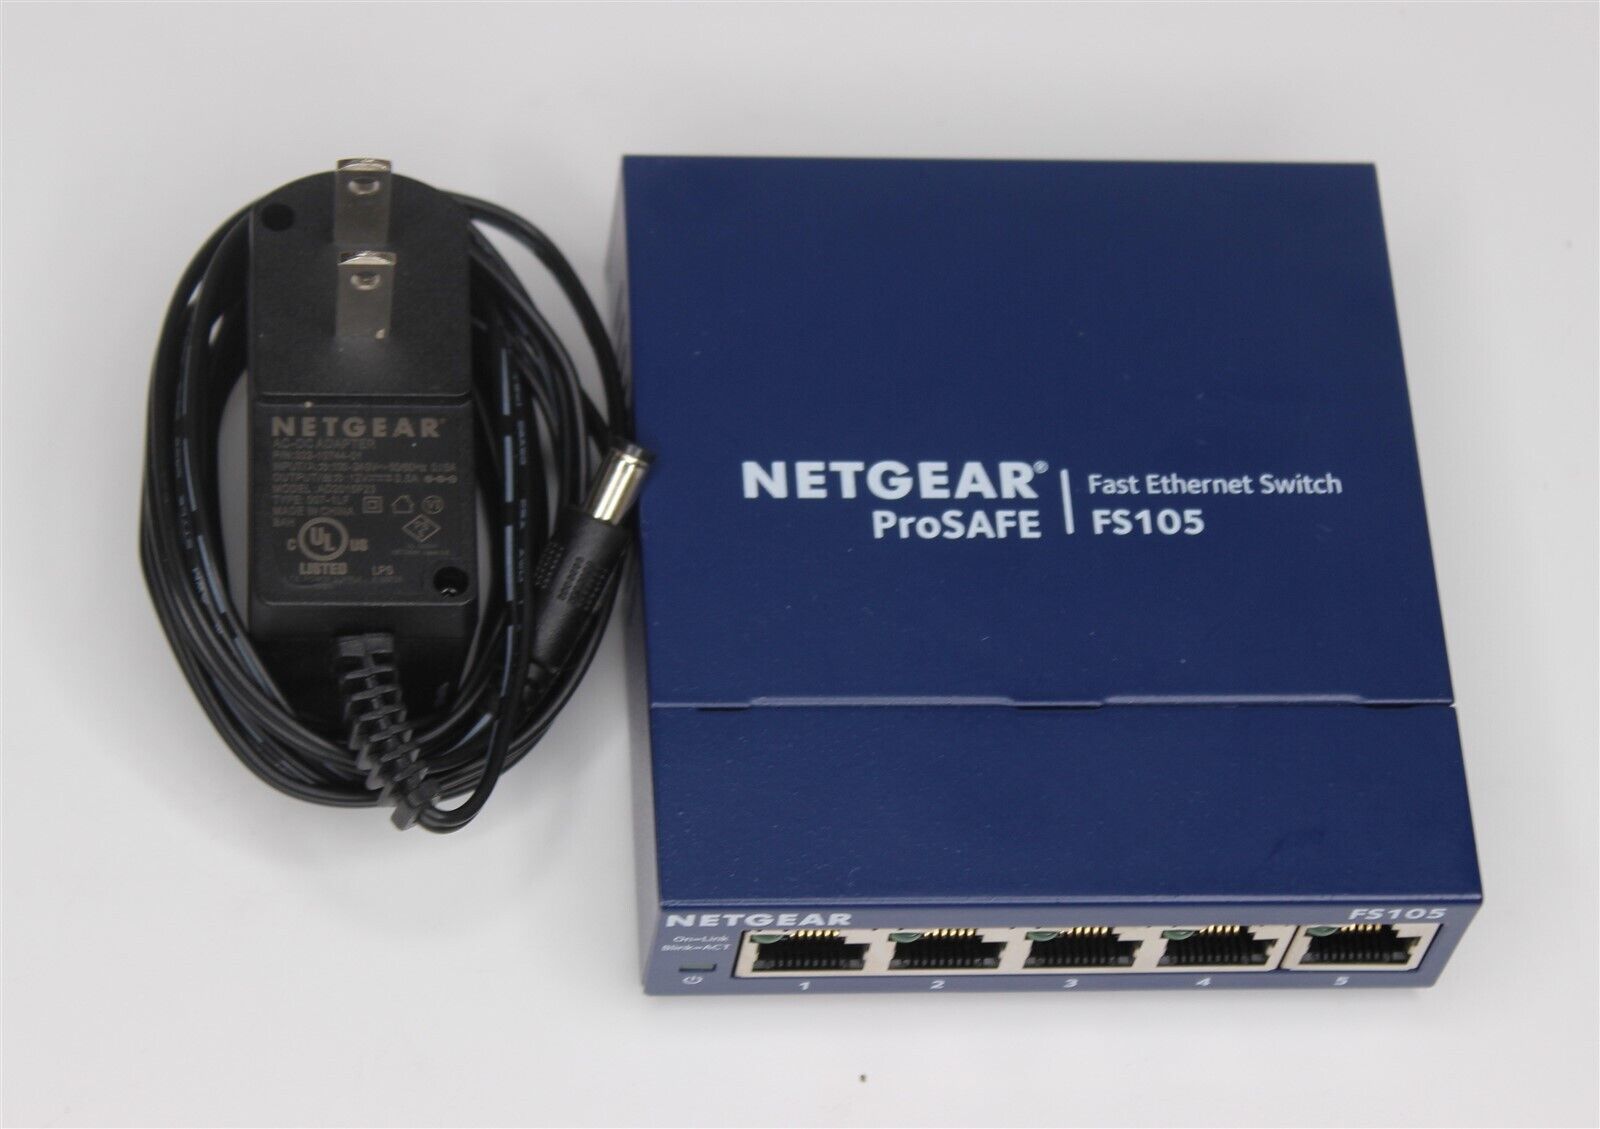 Netgear Prosafe FS105 10/100 5-Port Ethernet Switch